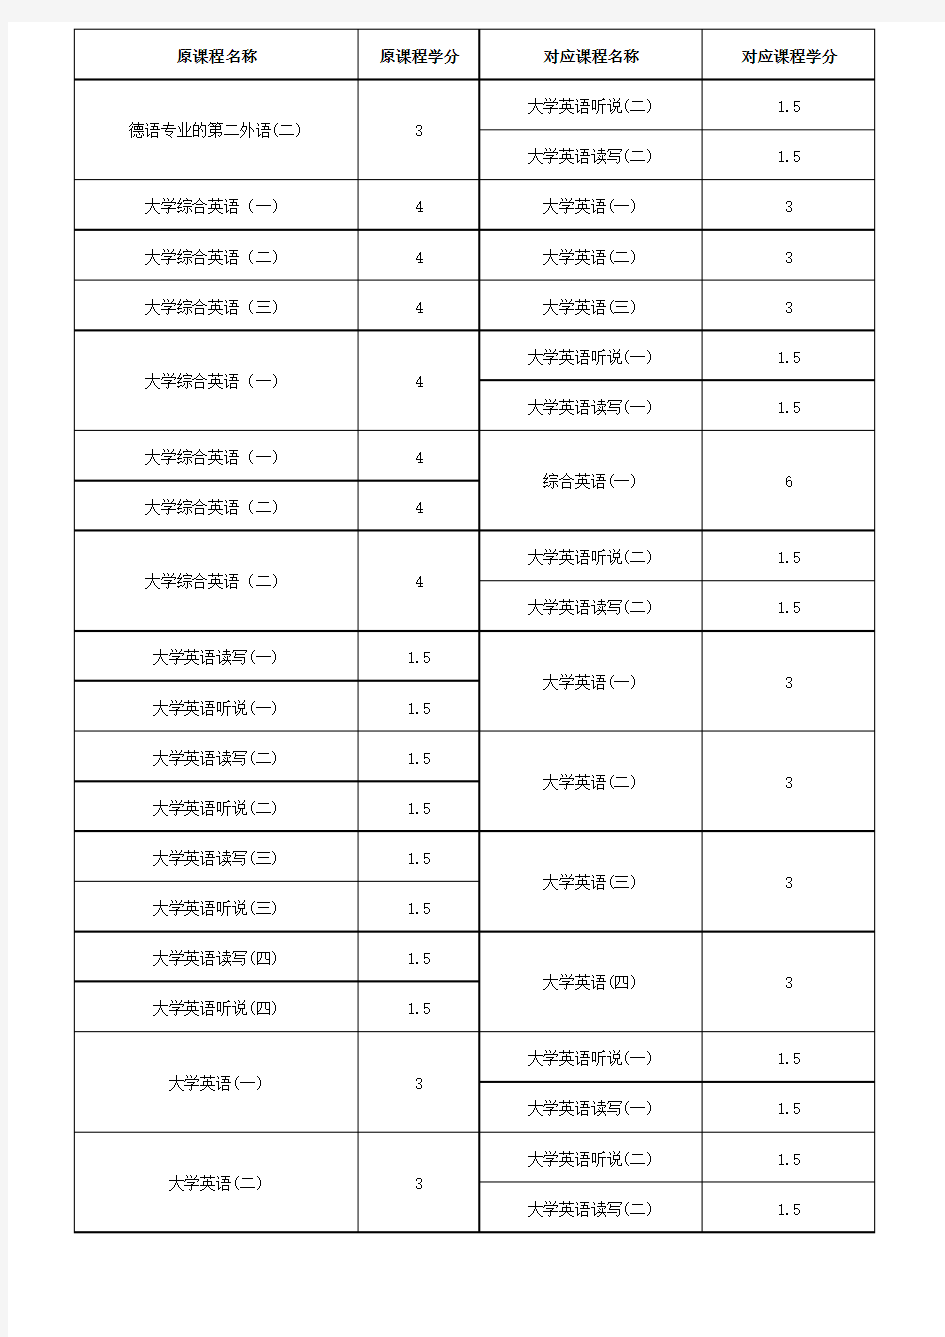 武汉科技大学本科生课程转换和学分认定对照表